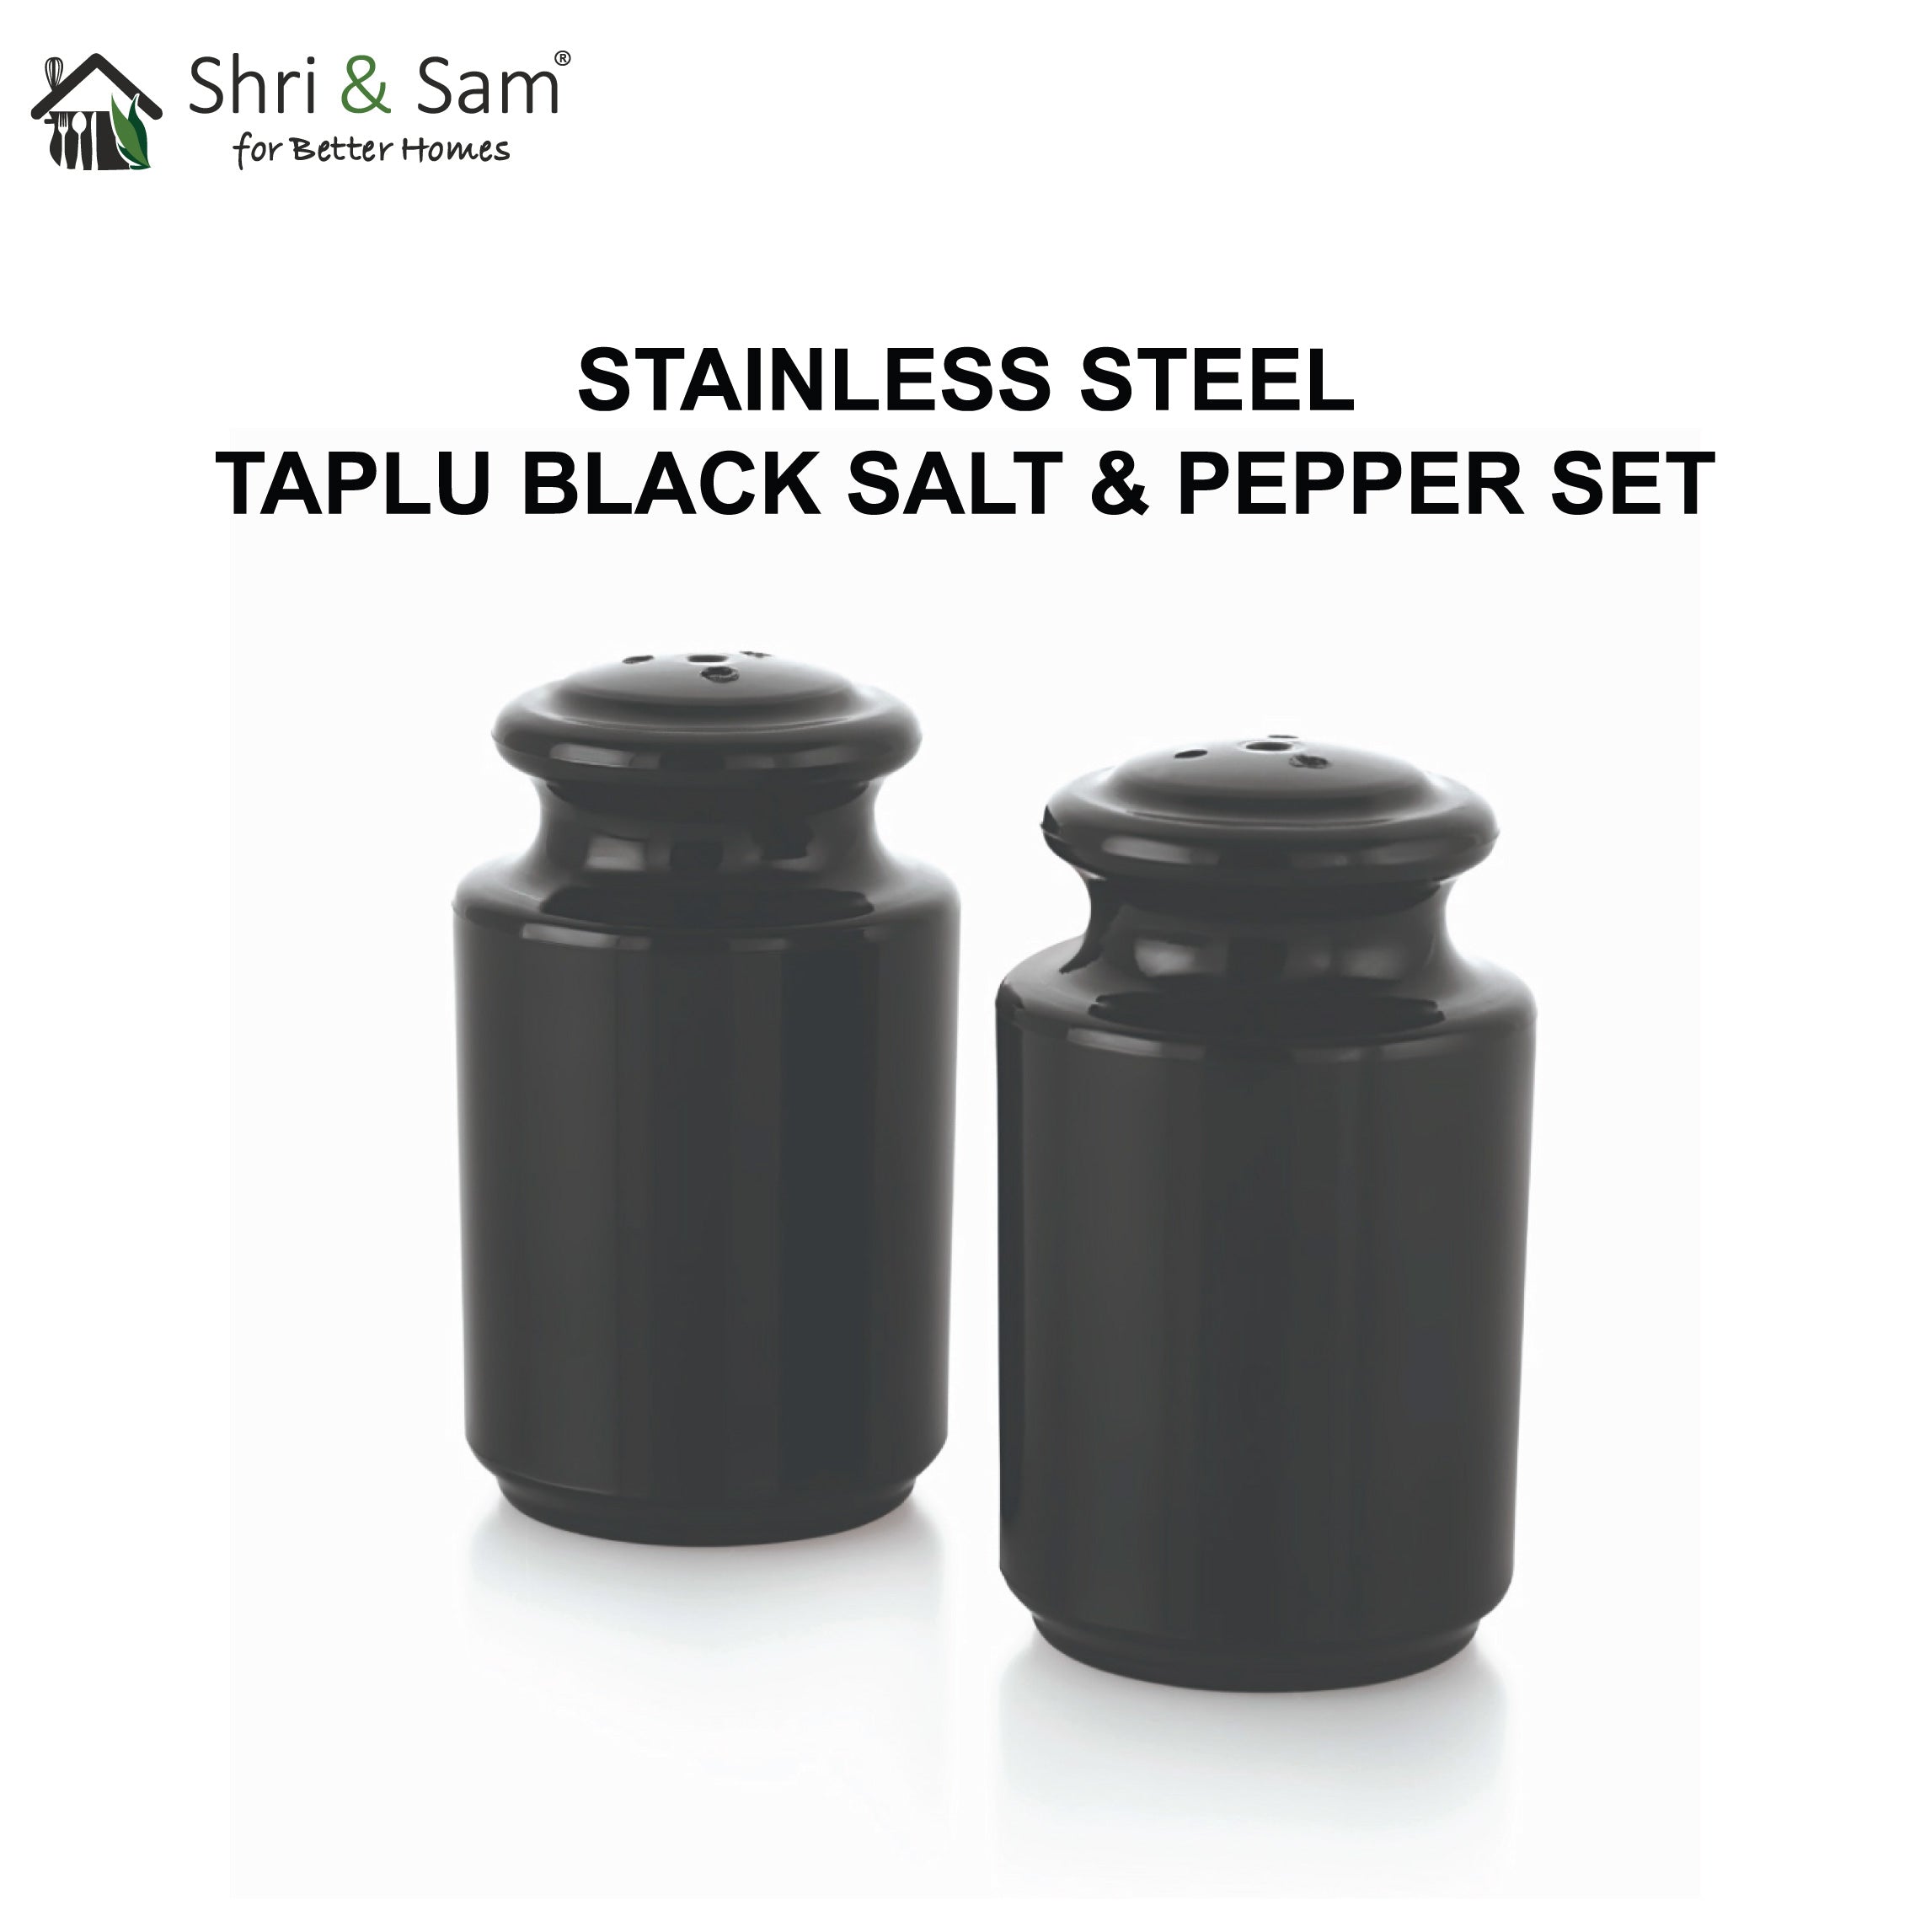 Stainless Steel Taplu Salt & Pepper